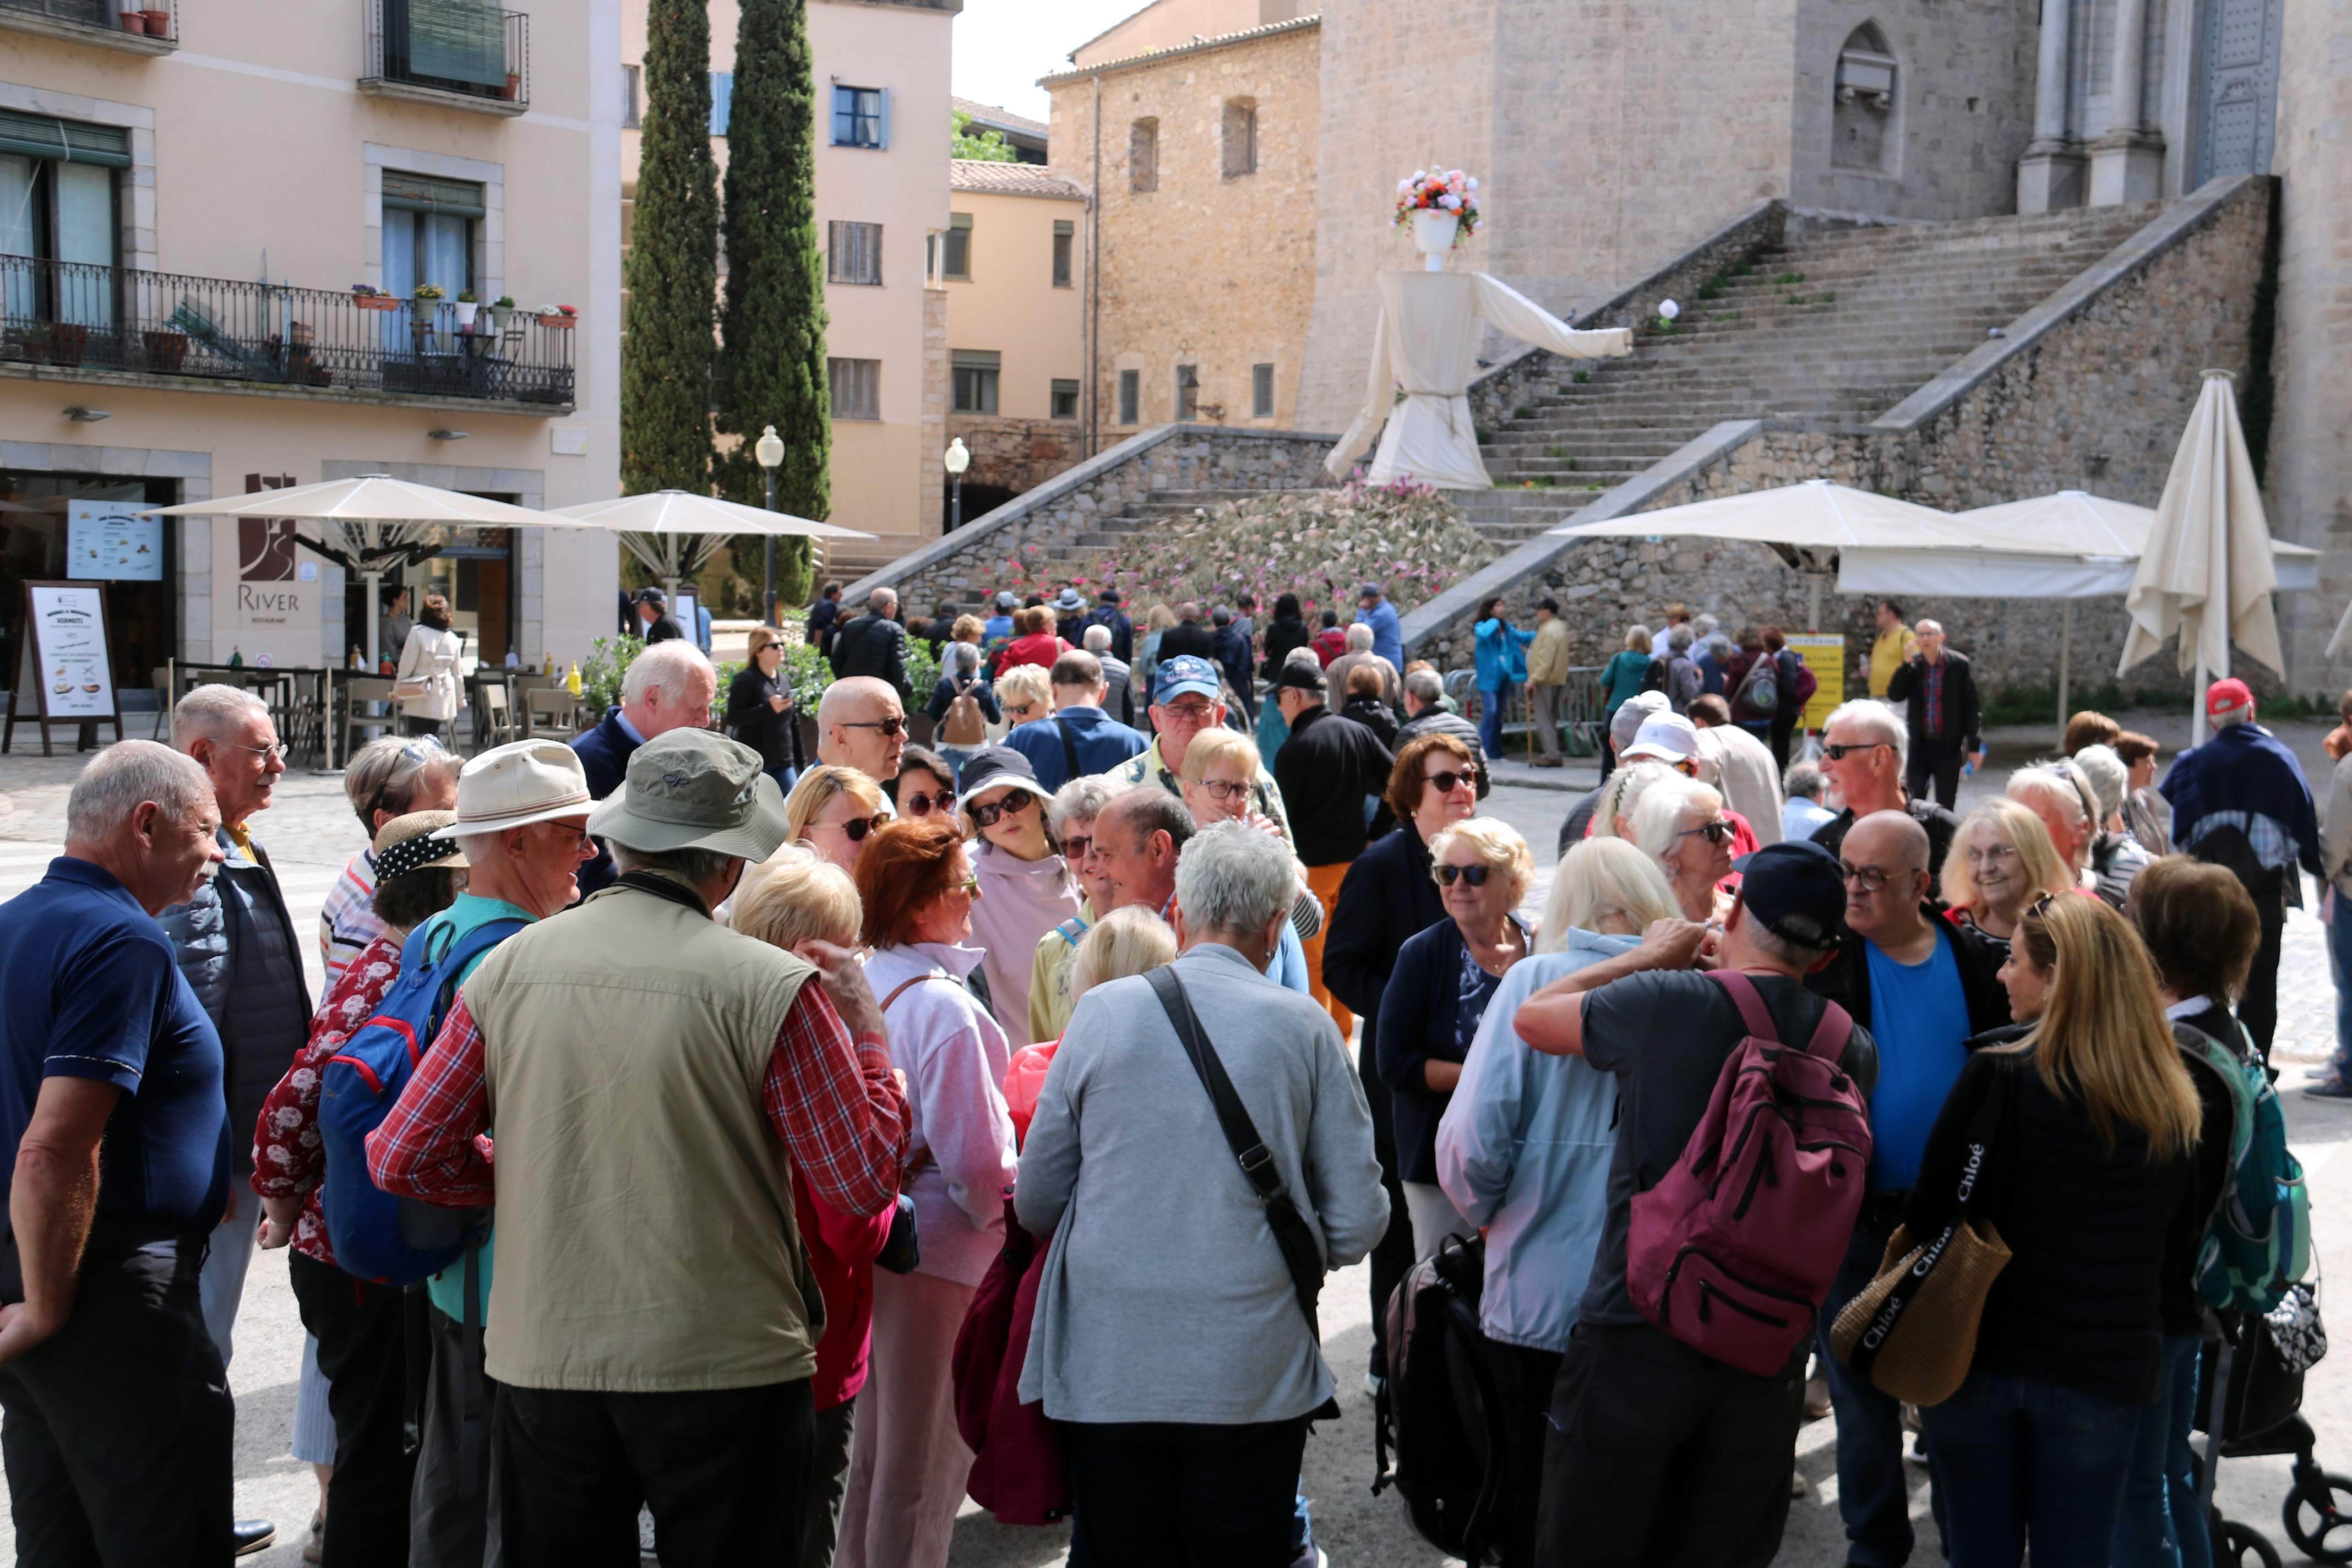 Neix una plataforma veïnal contra la massificació turística a Girona: "Hem arribat al límit"